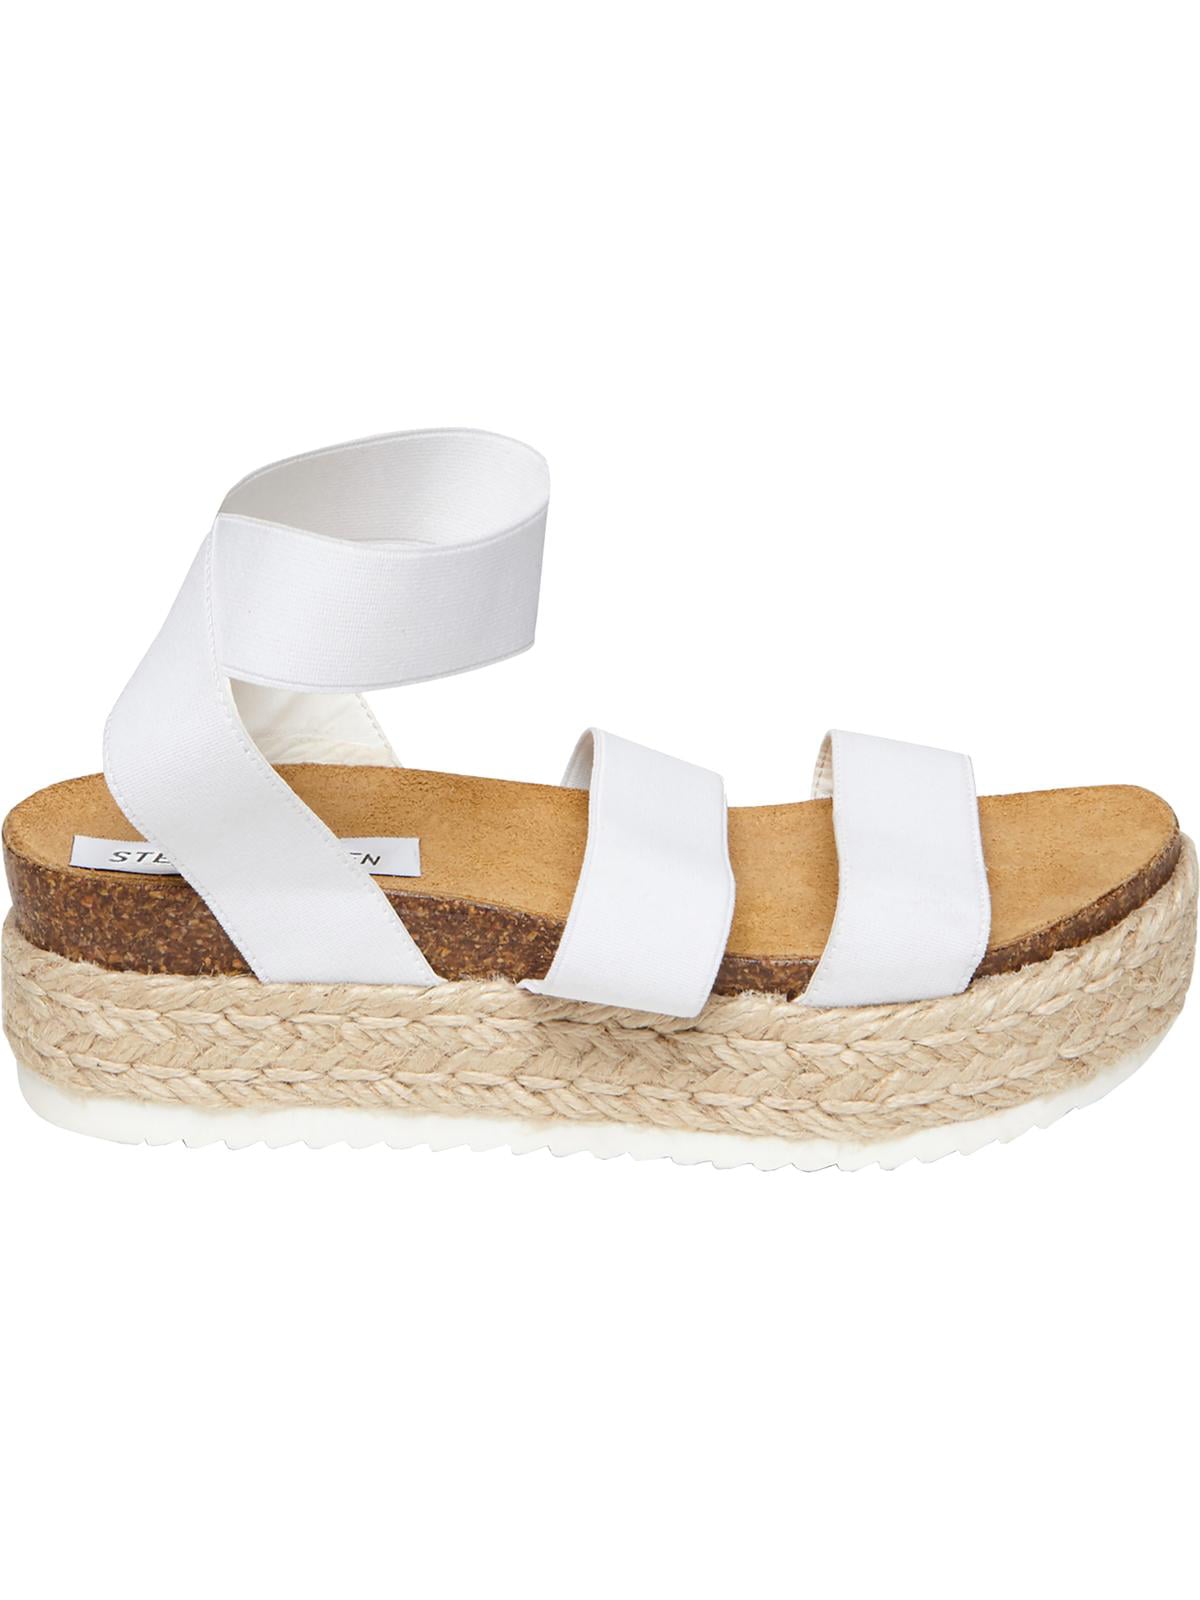 steve madden women's kimmie flatform espadrille sandals white